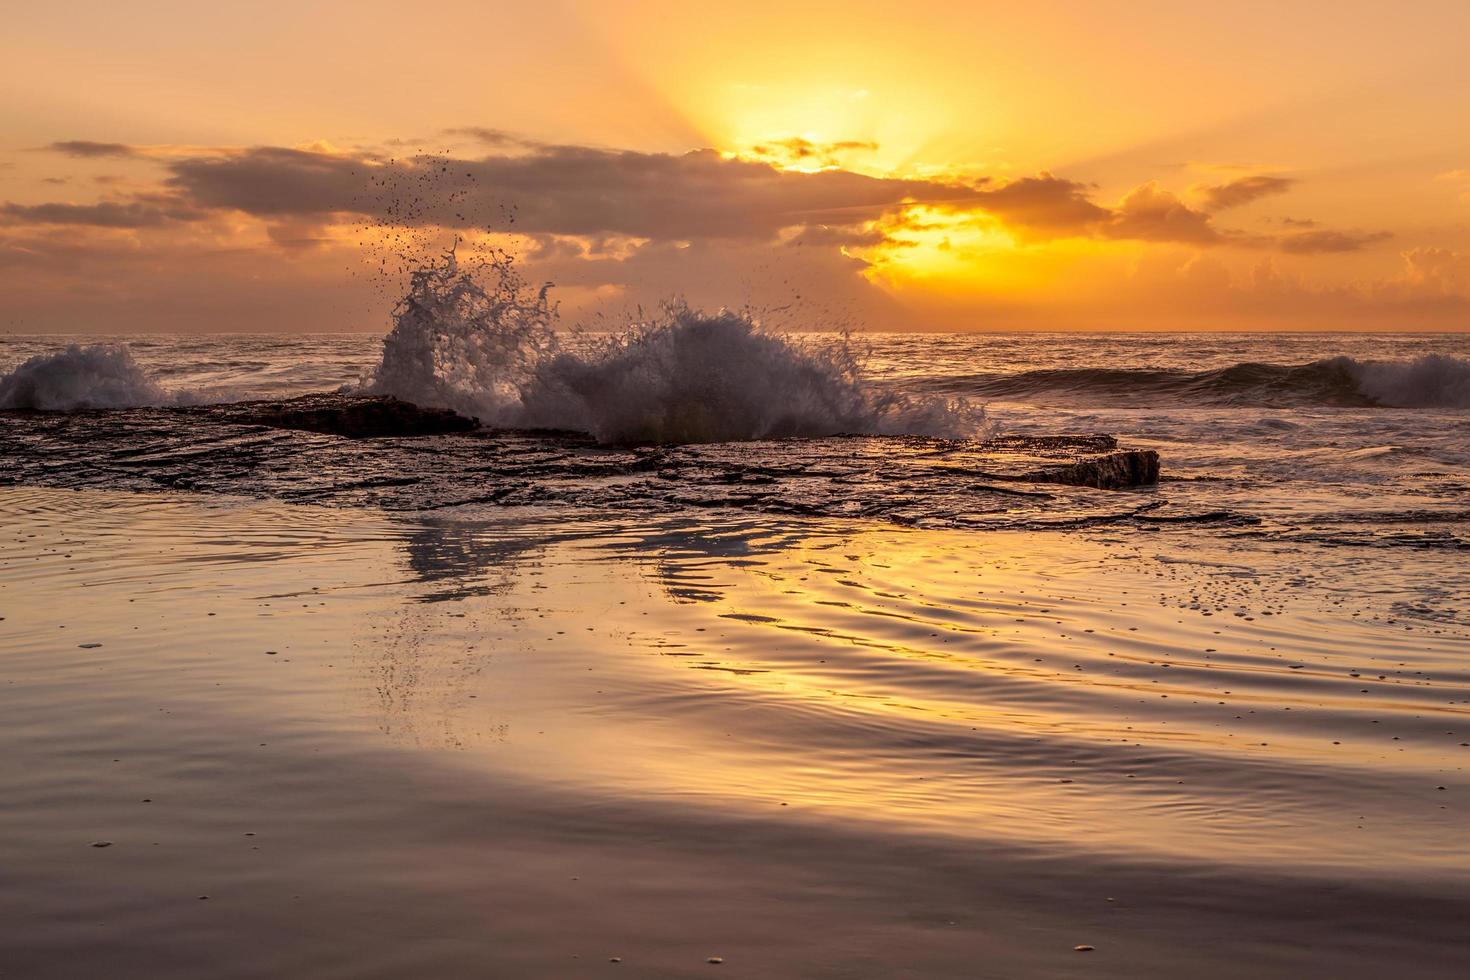 oceaan golven op de wal tijdens zonsondergang foto